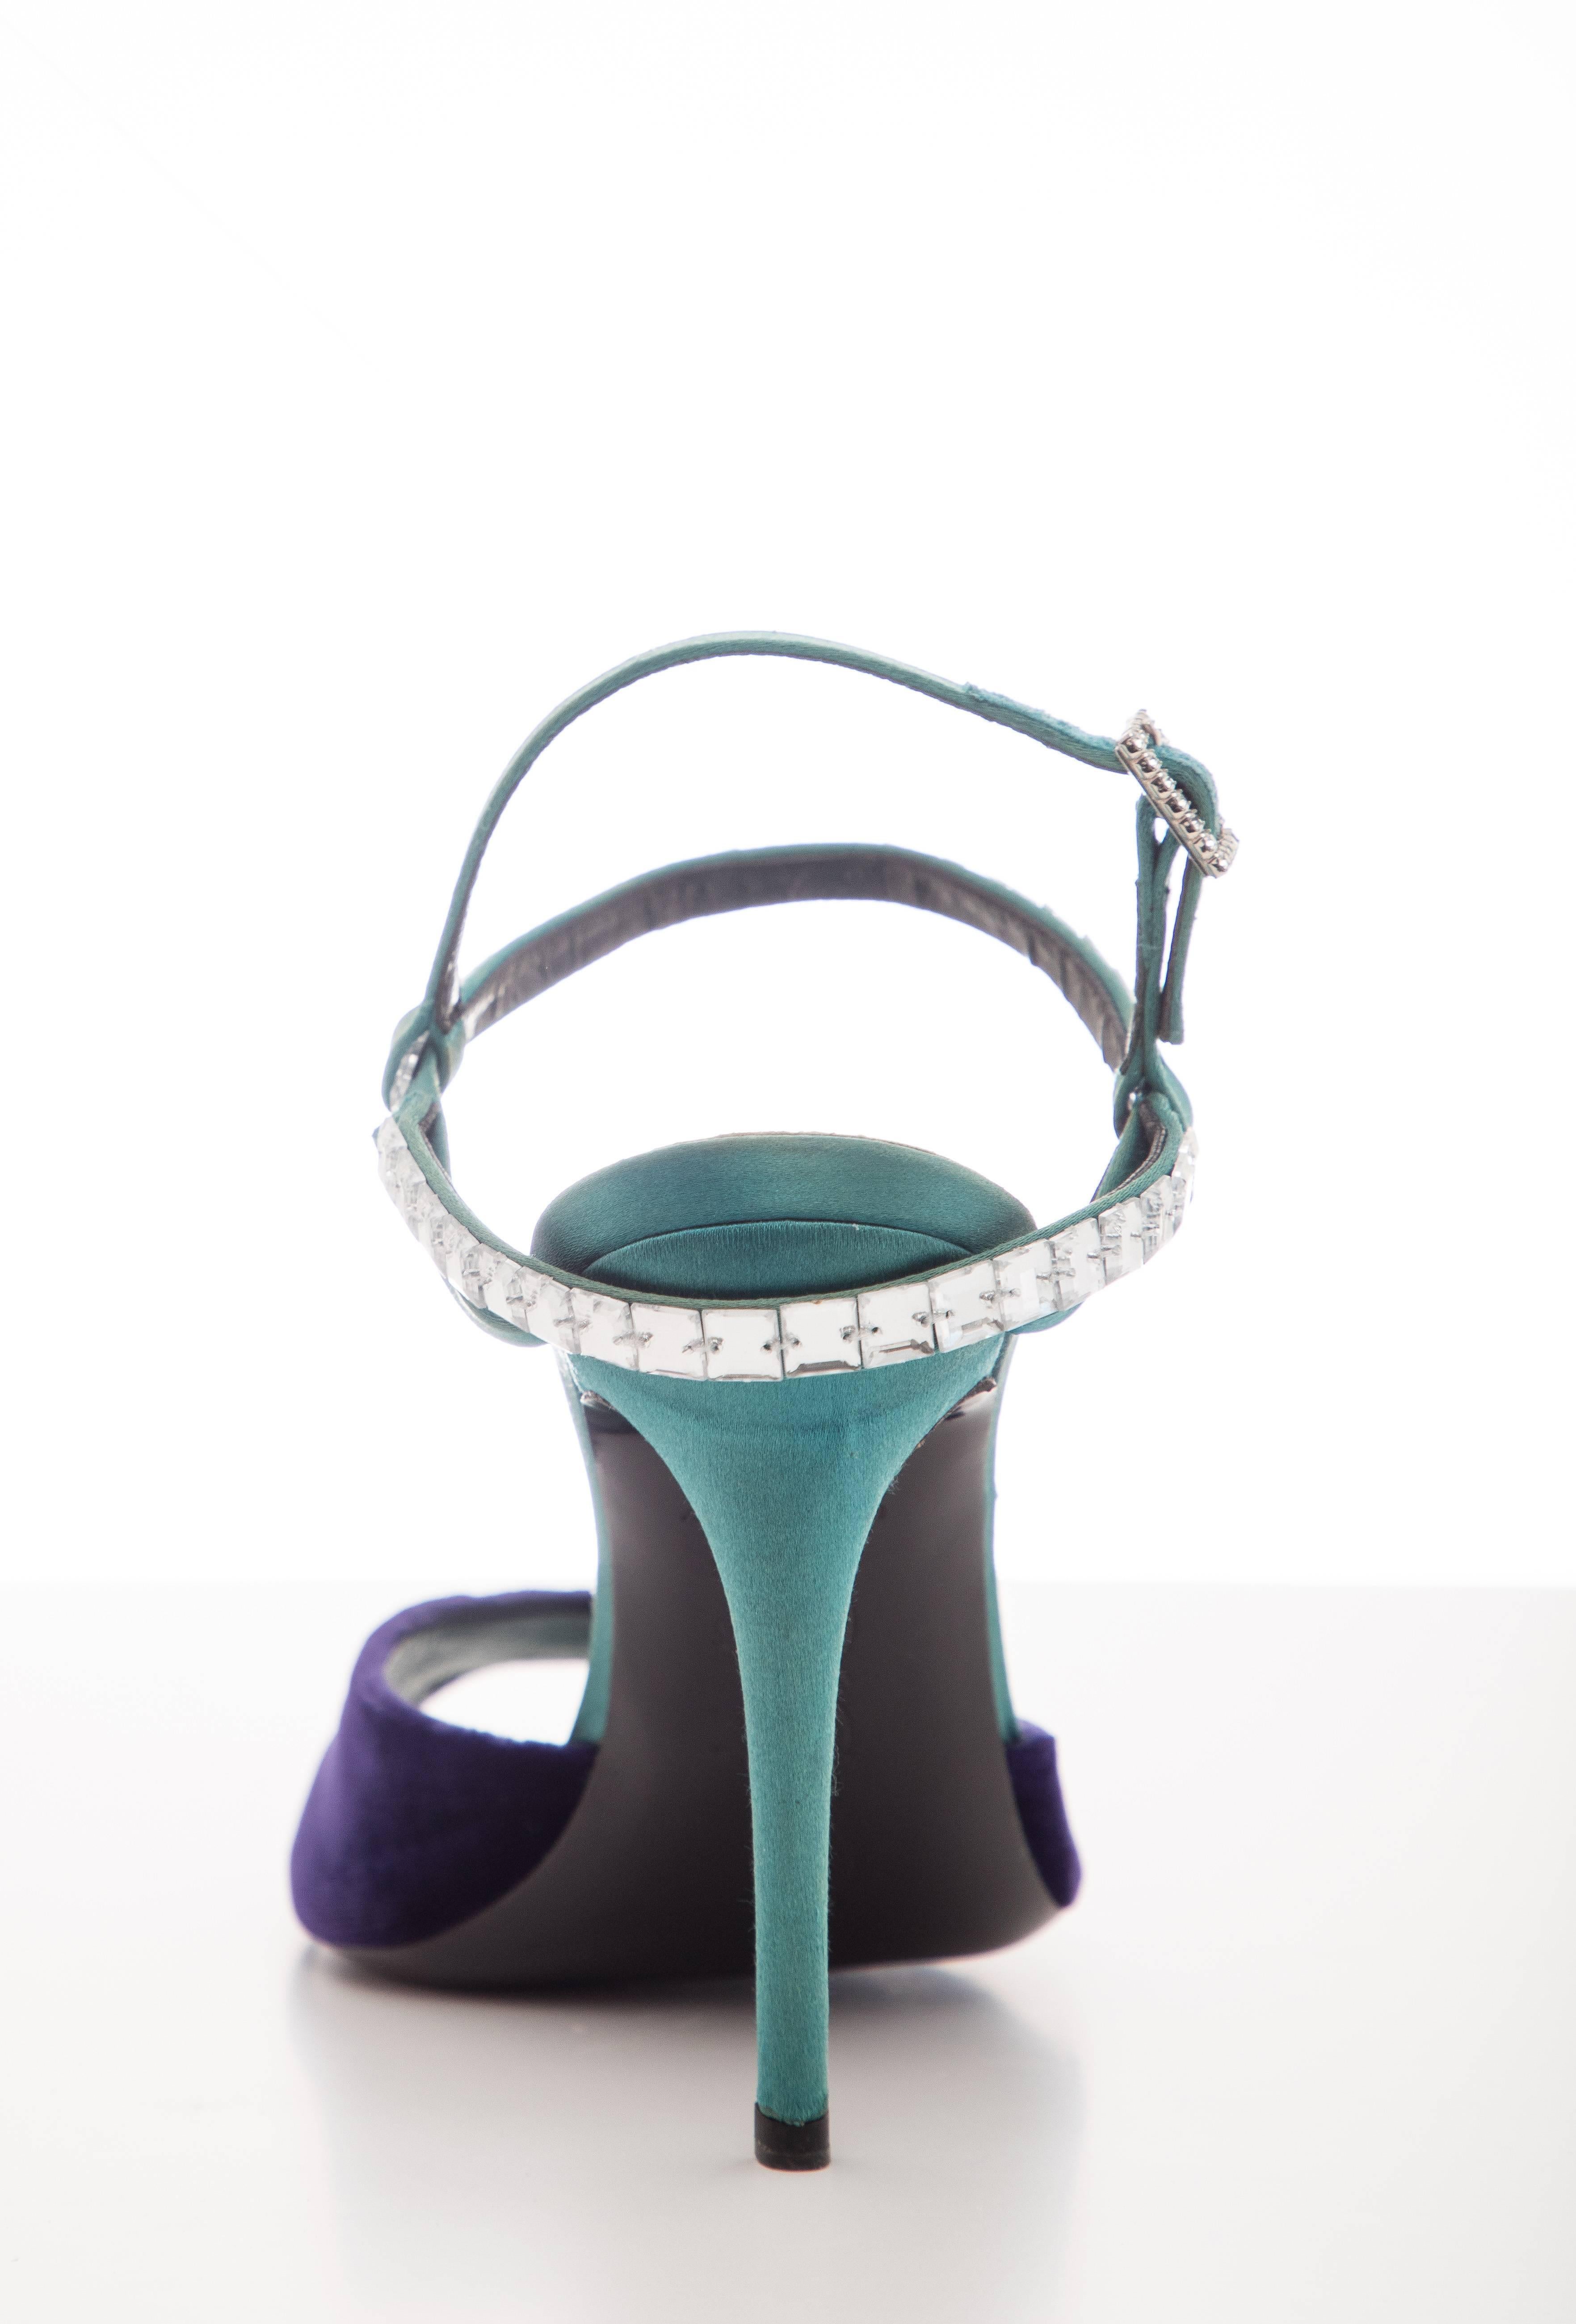 Roger Vivier Silk Satin Velvet Pumps With Beveled Square Crystal Ankle Straps For Sale 4